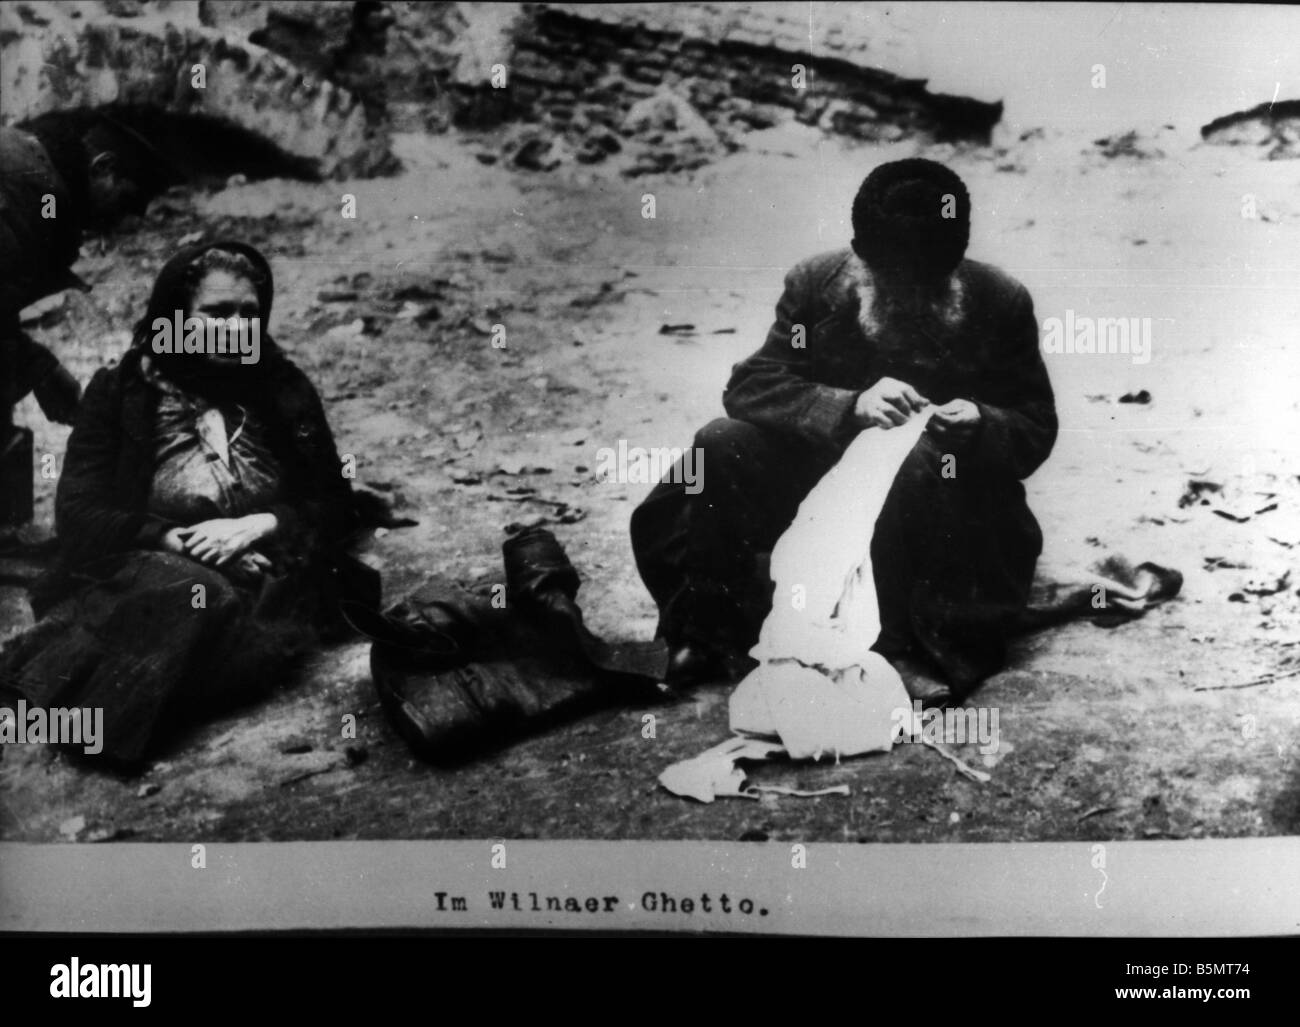 9EST 191500 A1 30 à Vilnius 1915 ghetto Histoire du Judaïsme Les Juifs orientaux en ghetto de Vilnius Photo c 191516 à partir d'une série de pho Banque D'Images